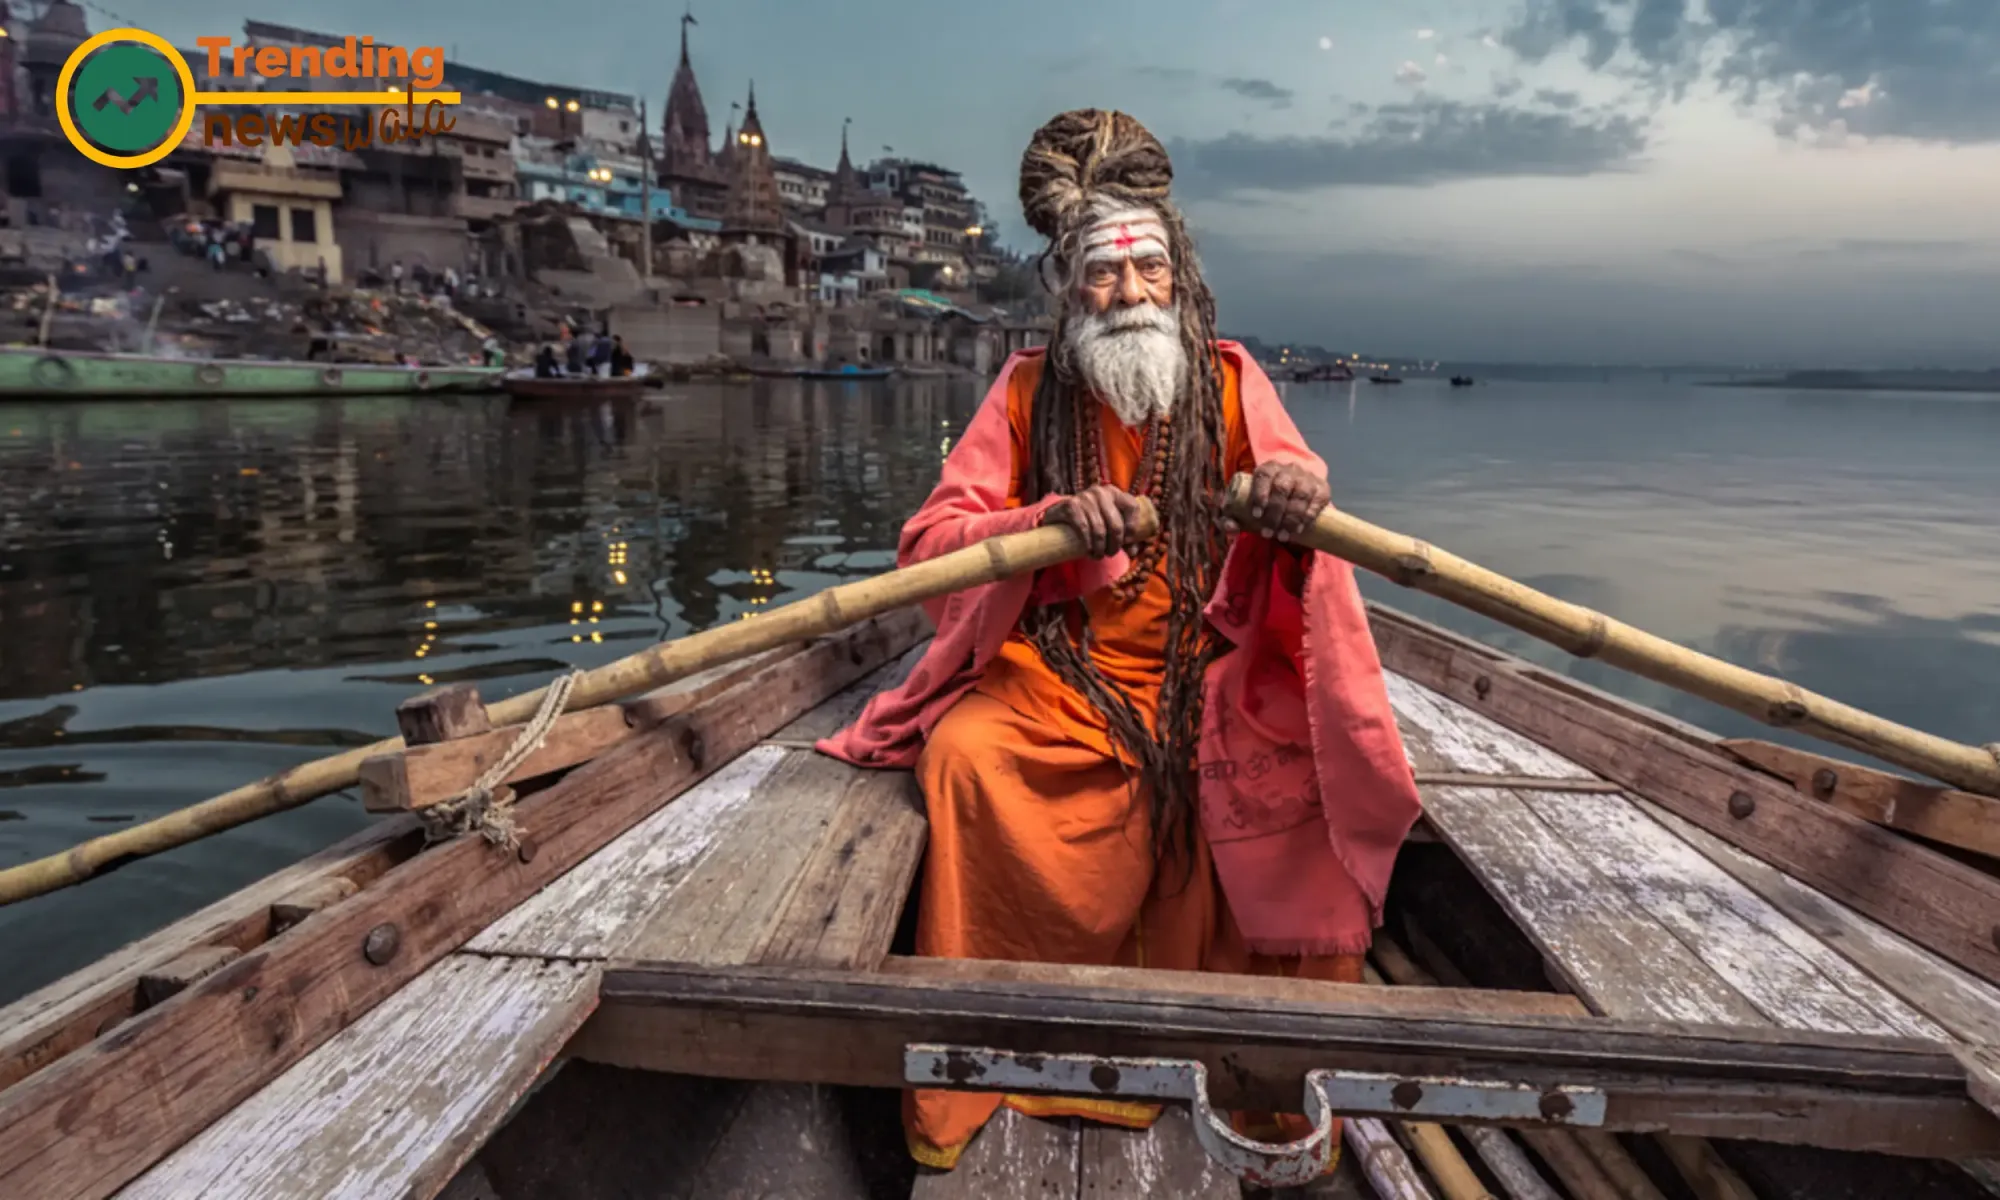 Hindu Sadhu in Ganga River while Boating